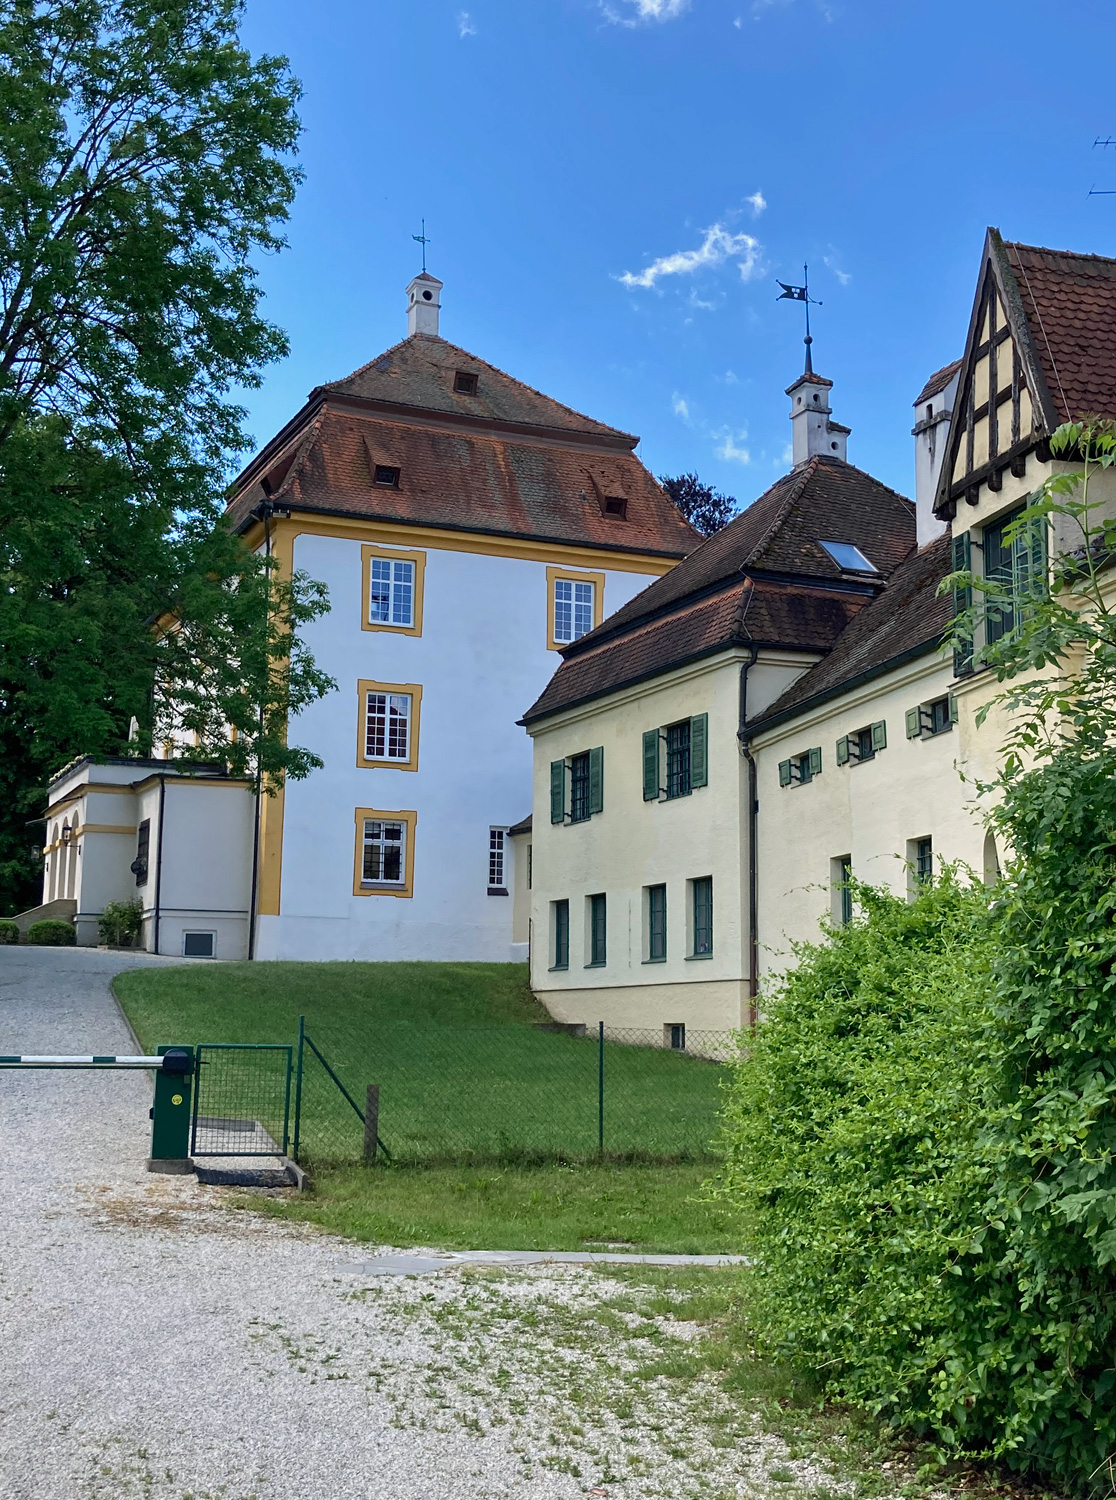 Schloss Aufhausen im Landkreis Erding